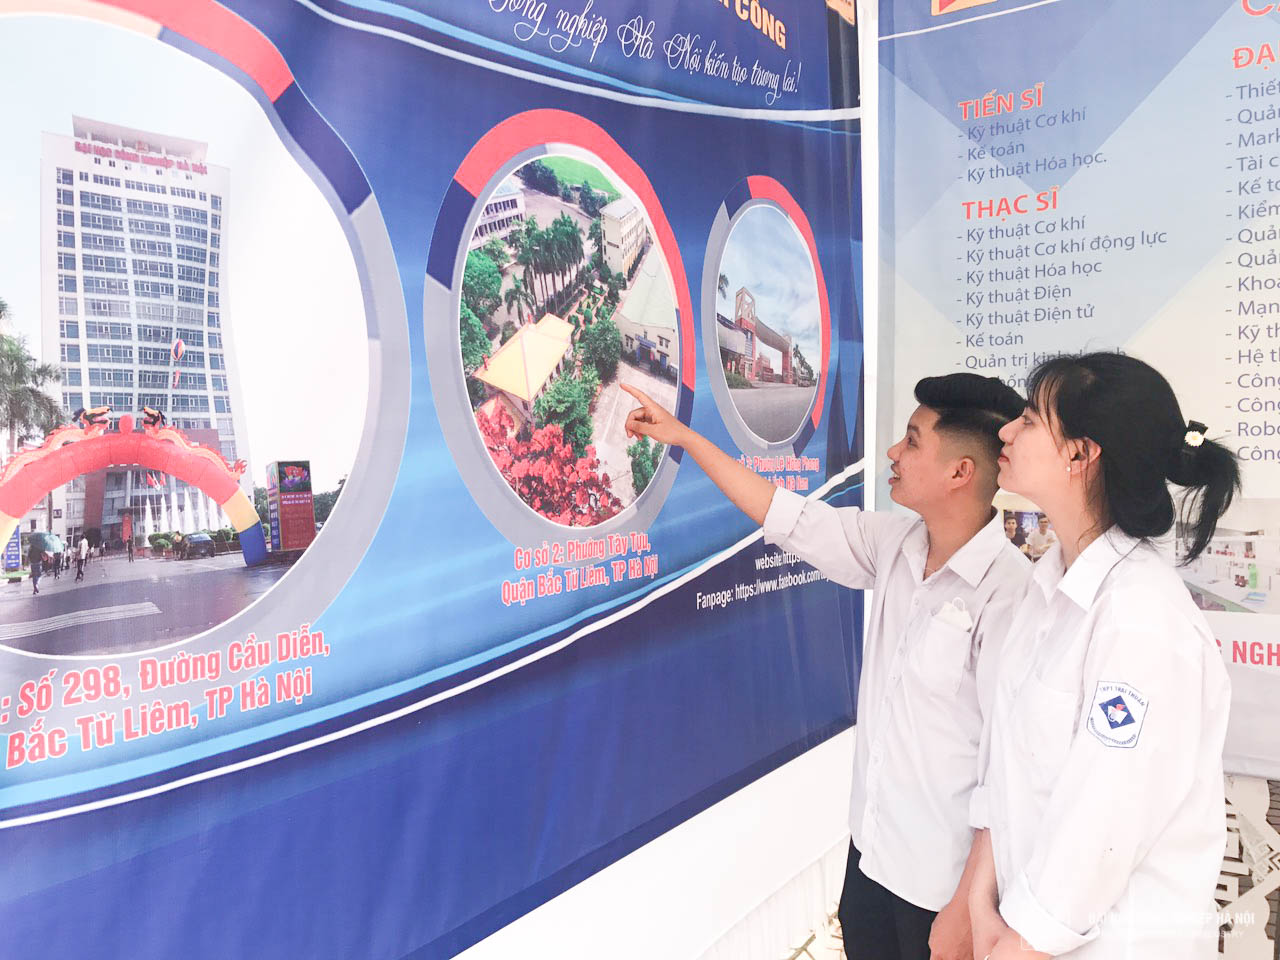 Sức hút của Đại học Công nghiệp Hà Nội tại Ngày hội tư vấn hướng nghiệp cho học sinh tỉnh Bắc Giang